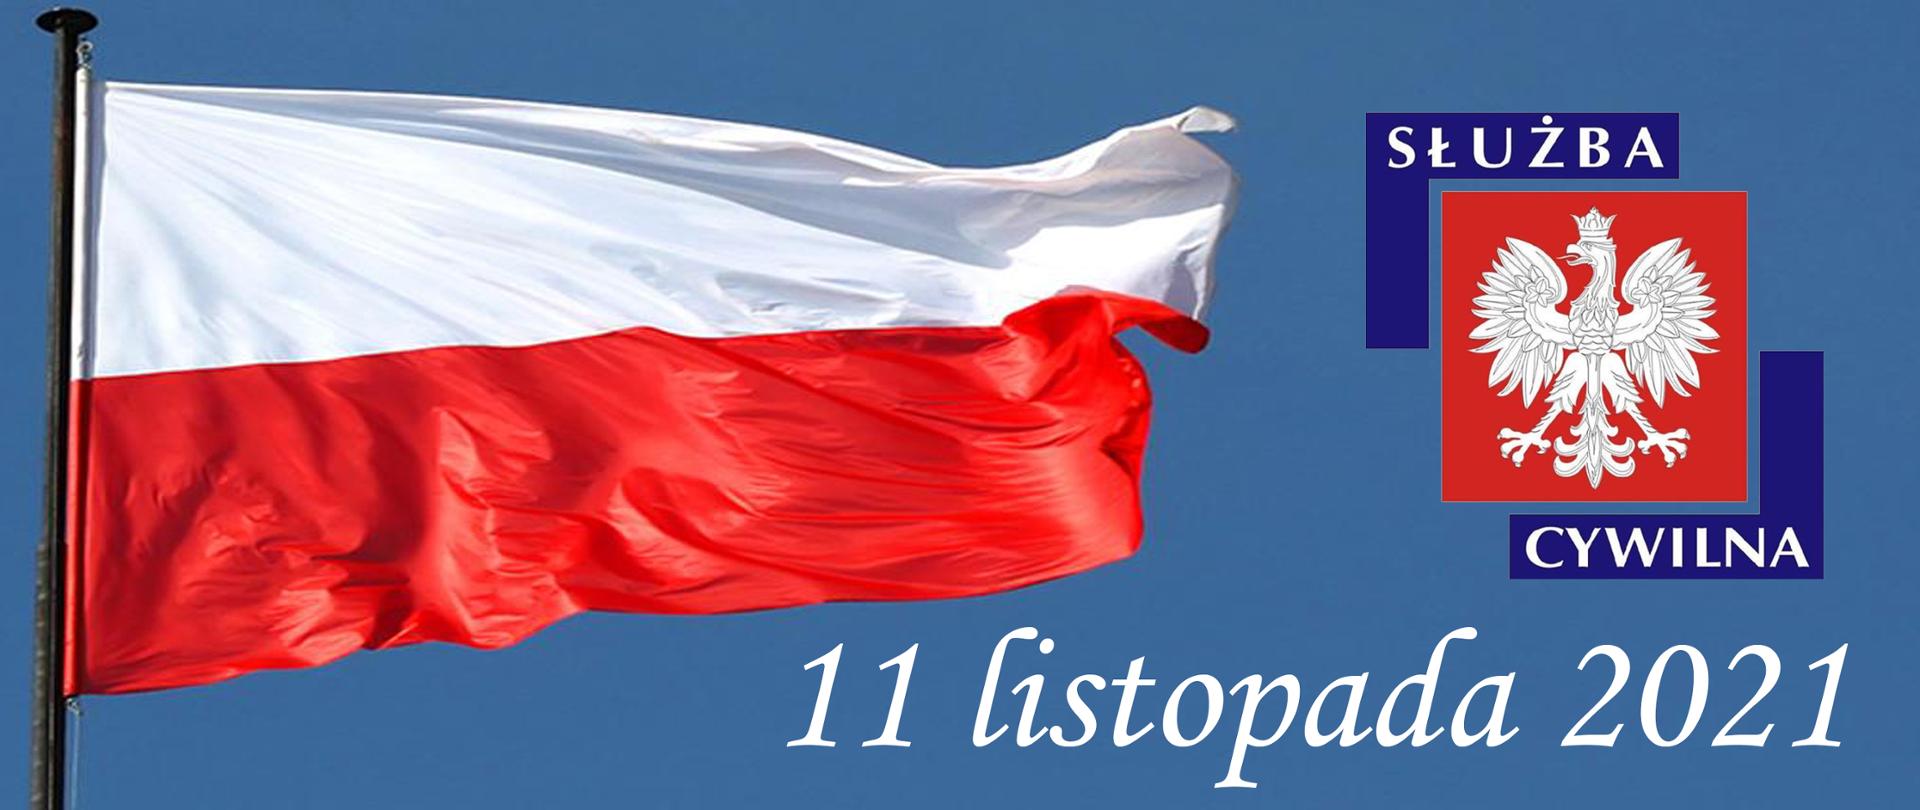 Infografika przedstawiająca powiewającą na wietrze biało czerwoną flagę Polski na błękitnym tle, obok kolorowy logotyp Służby Cywilnej oraz poniżej napis koloru białego o treści 11 listopada 2021.